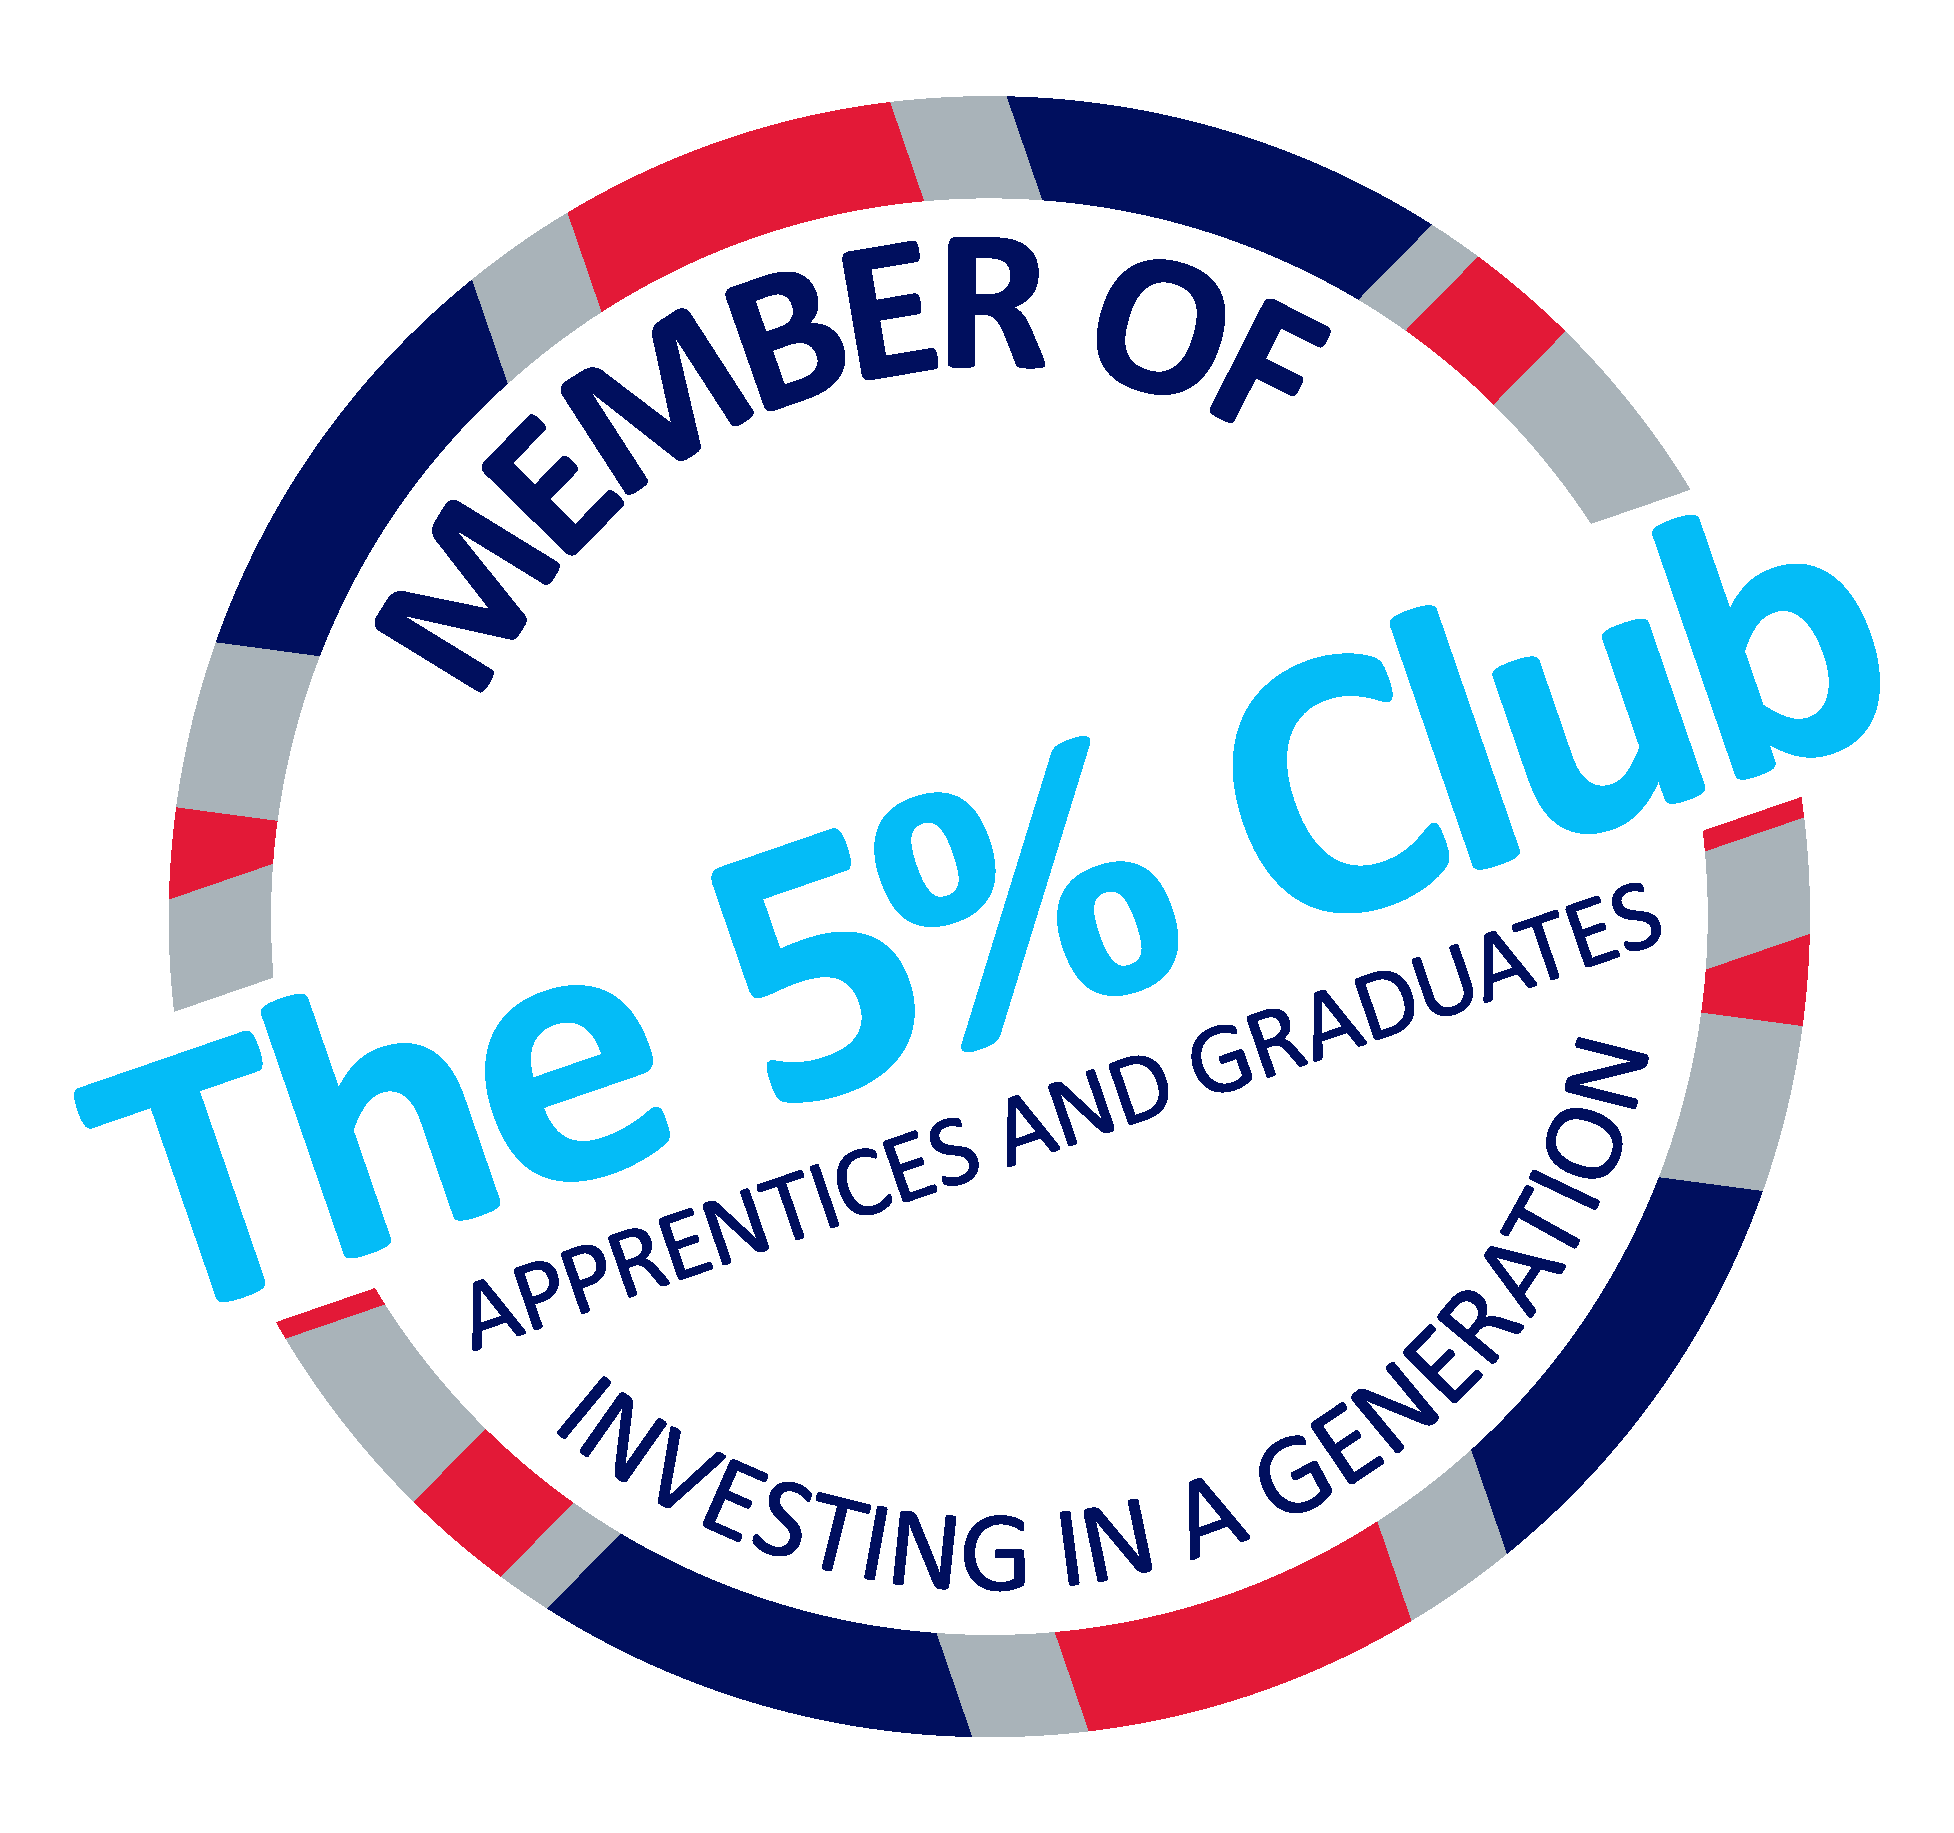 Member of the 5% Club Logo